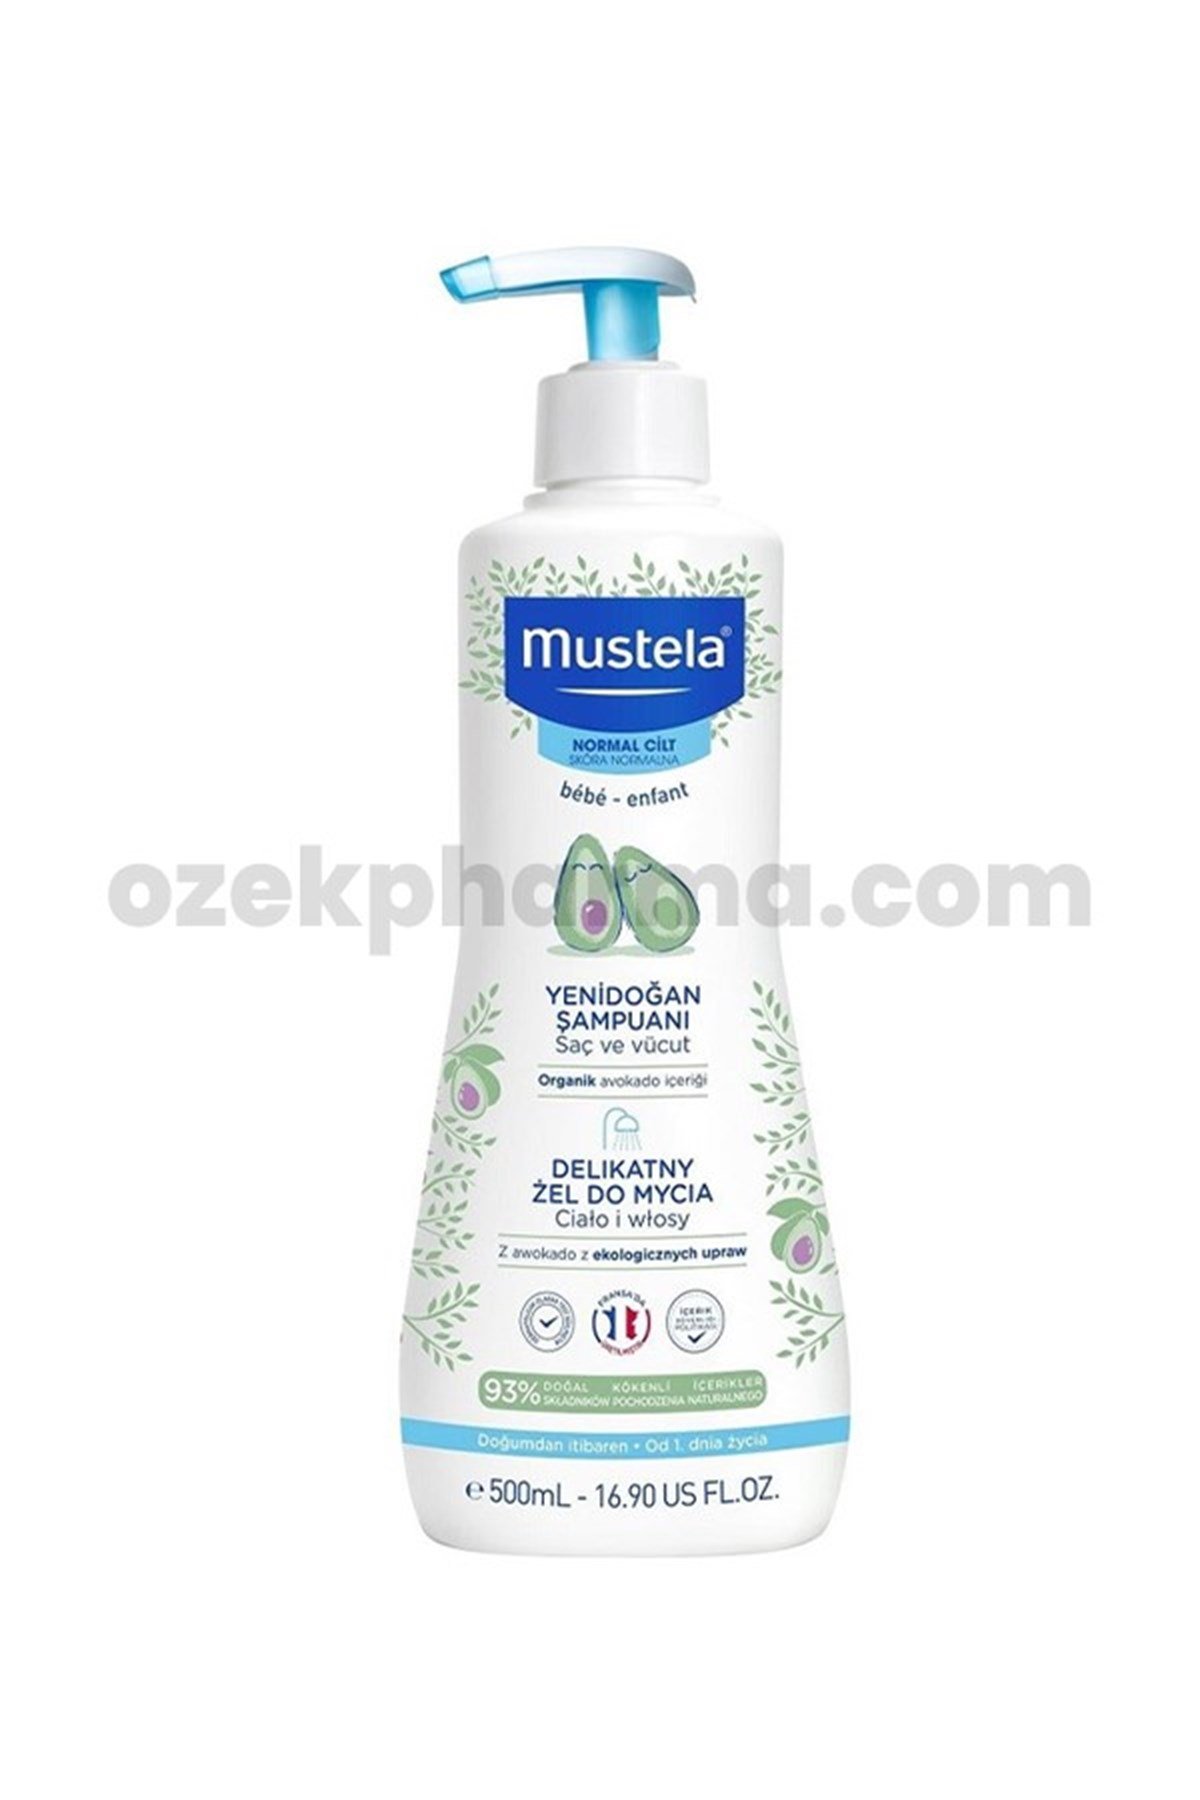 Mustela Gentle Cleansing Gel 500 ml-Yenidoğan Şampuanı | ozekpharma.com